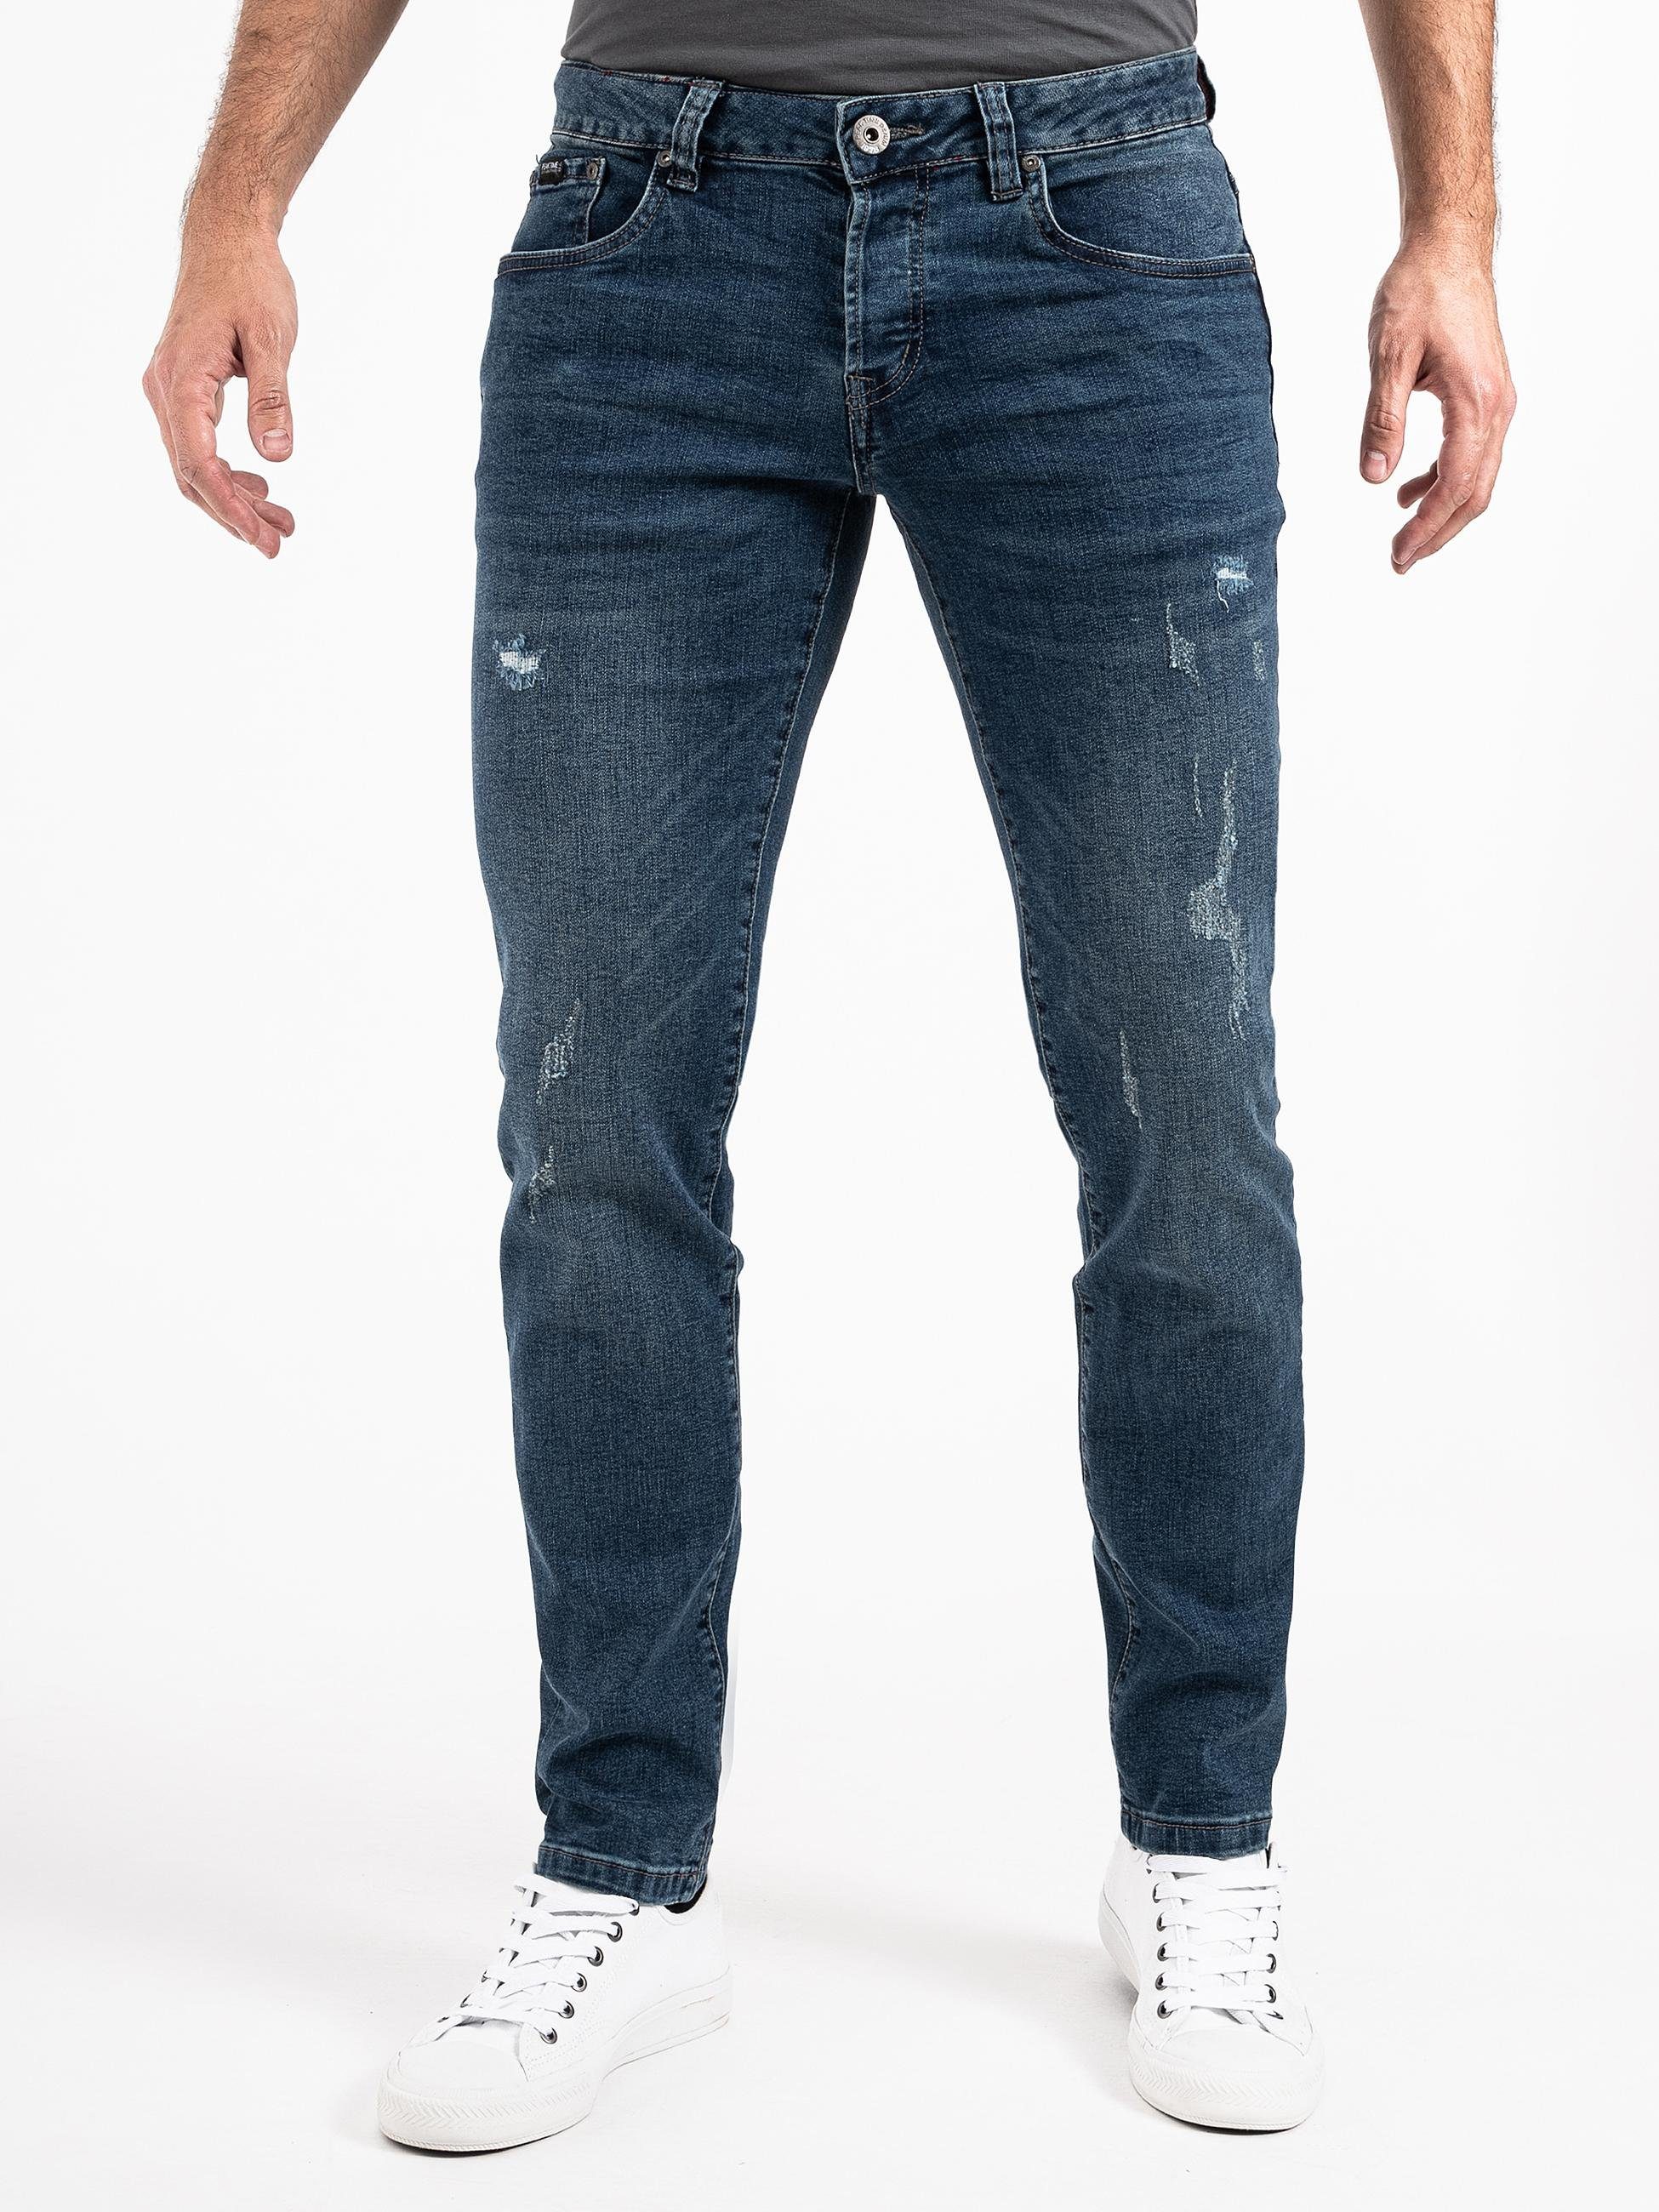 München Jeans TIME Slim-fit-Jeans blau Destroyed-Optik mit Stretch-Bund und PEAK Herren